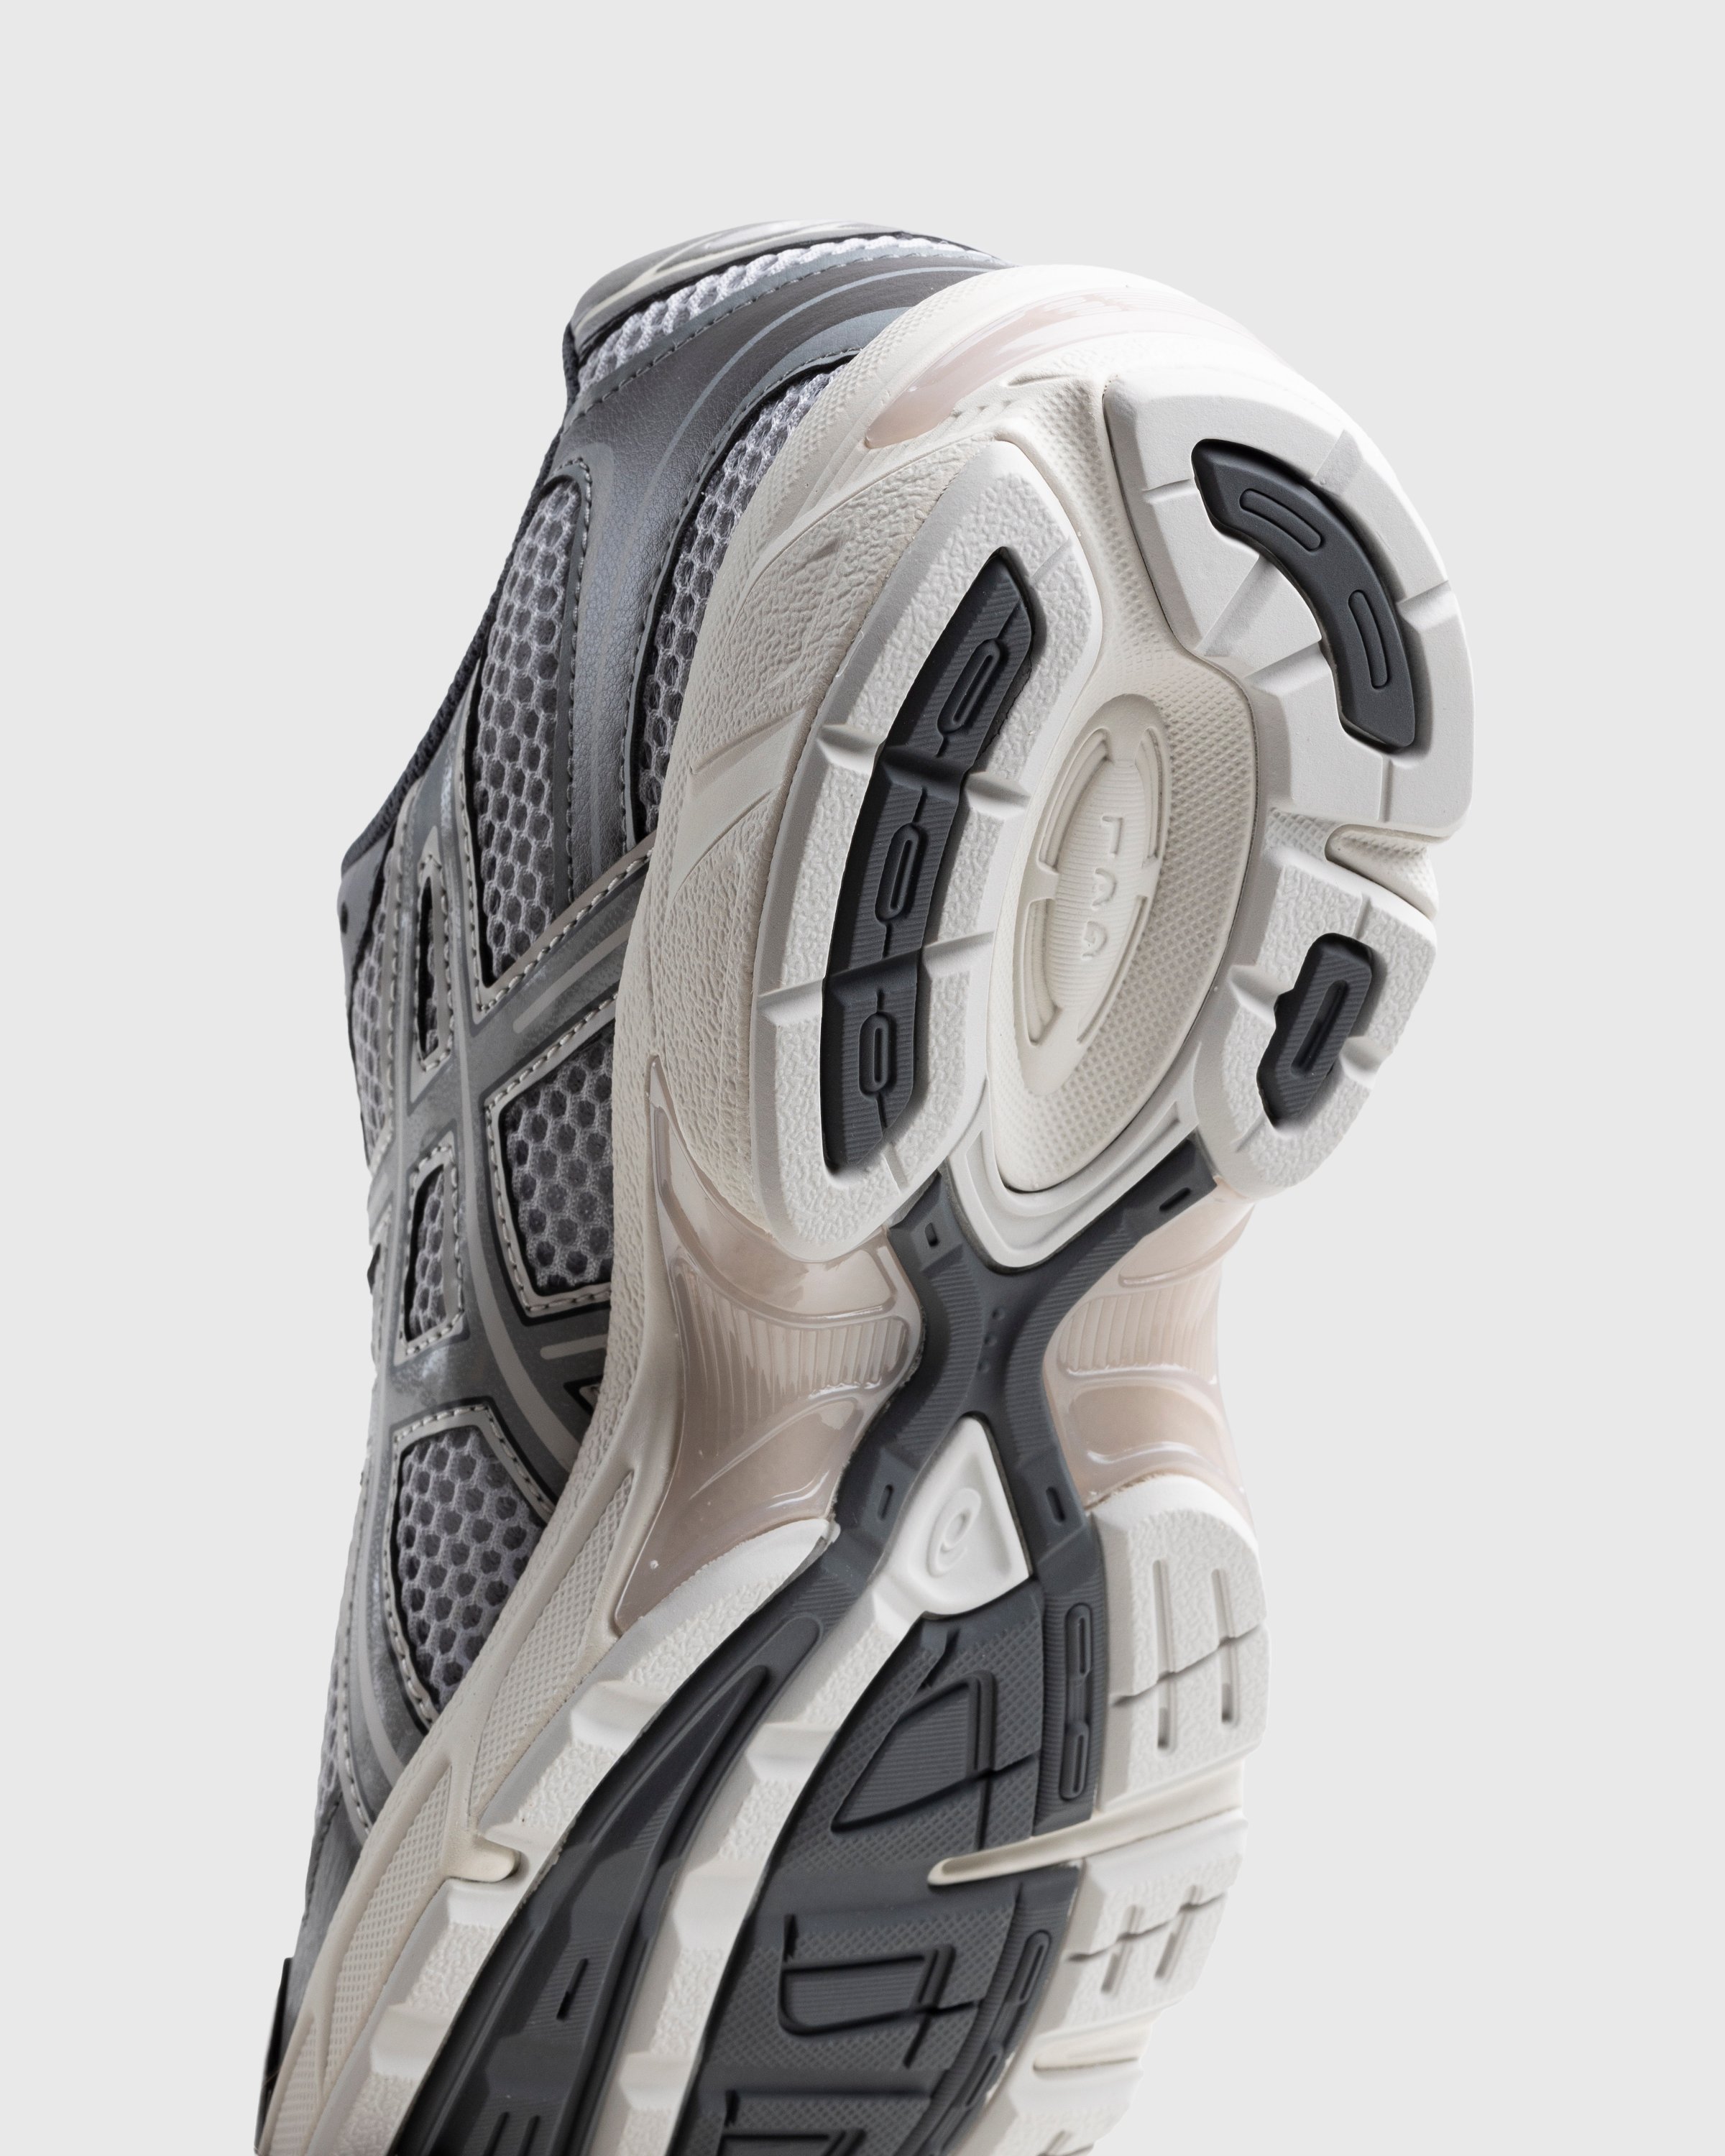 asics - Gel-1130 Oyster Grey/Clay Grey - Footwear - Grey - Image 6